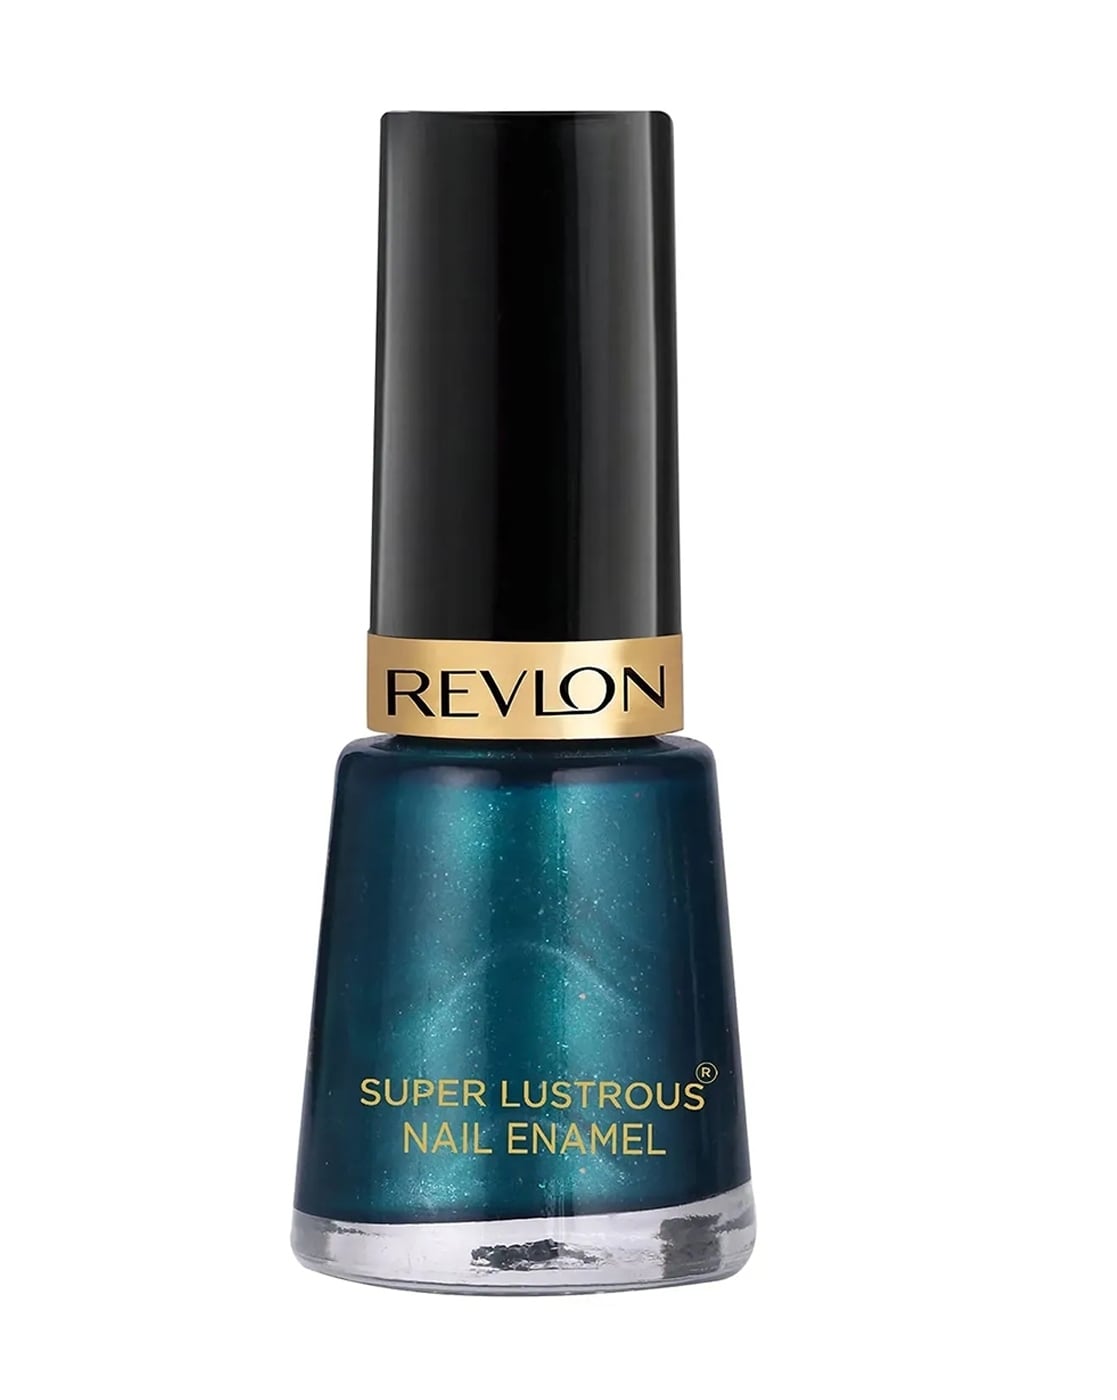 Revlon Nail Enamel in Vixen review | The Style Spot